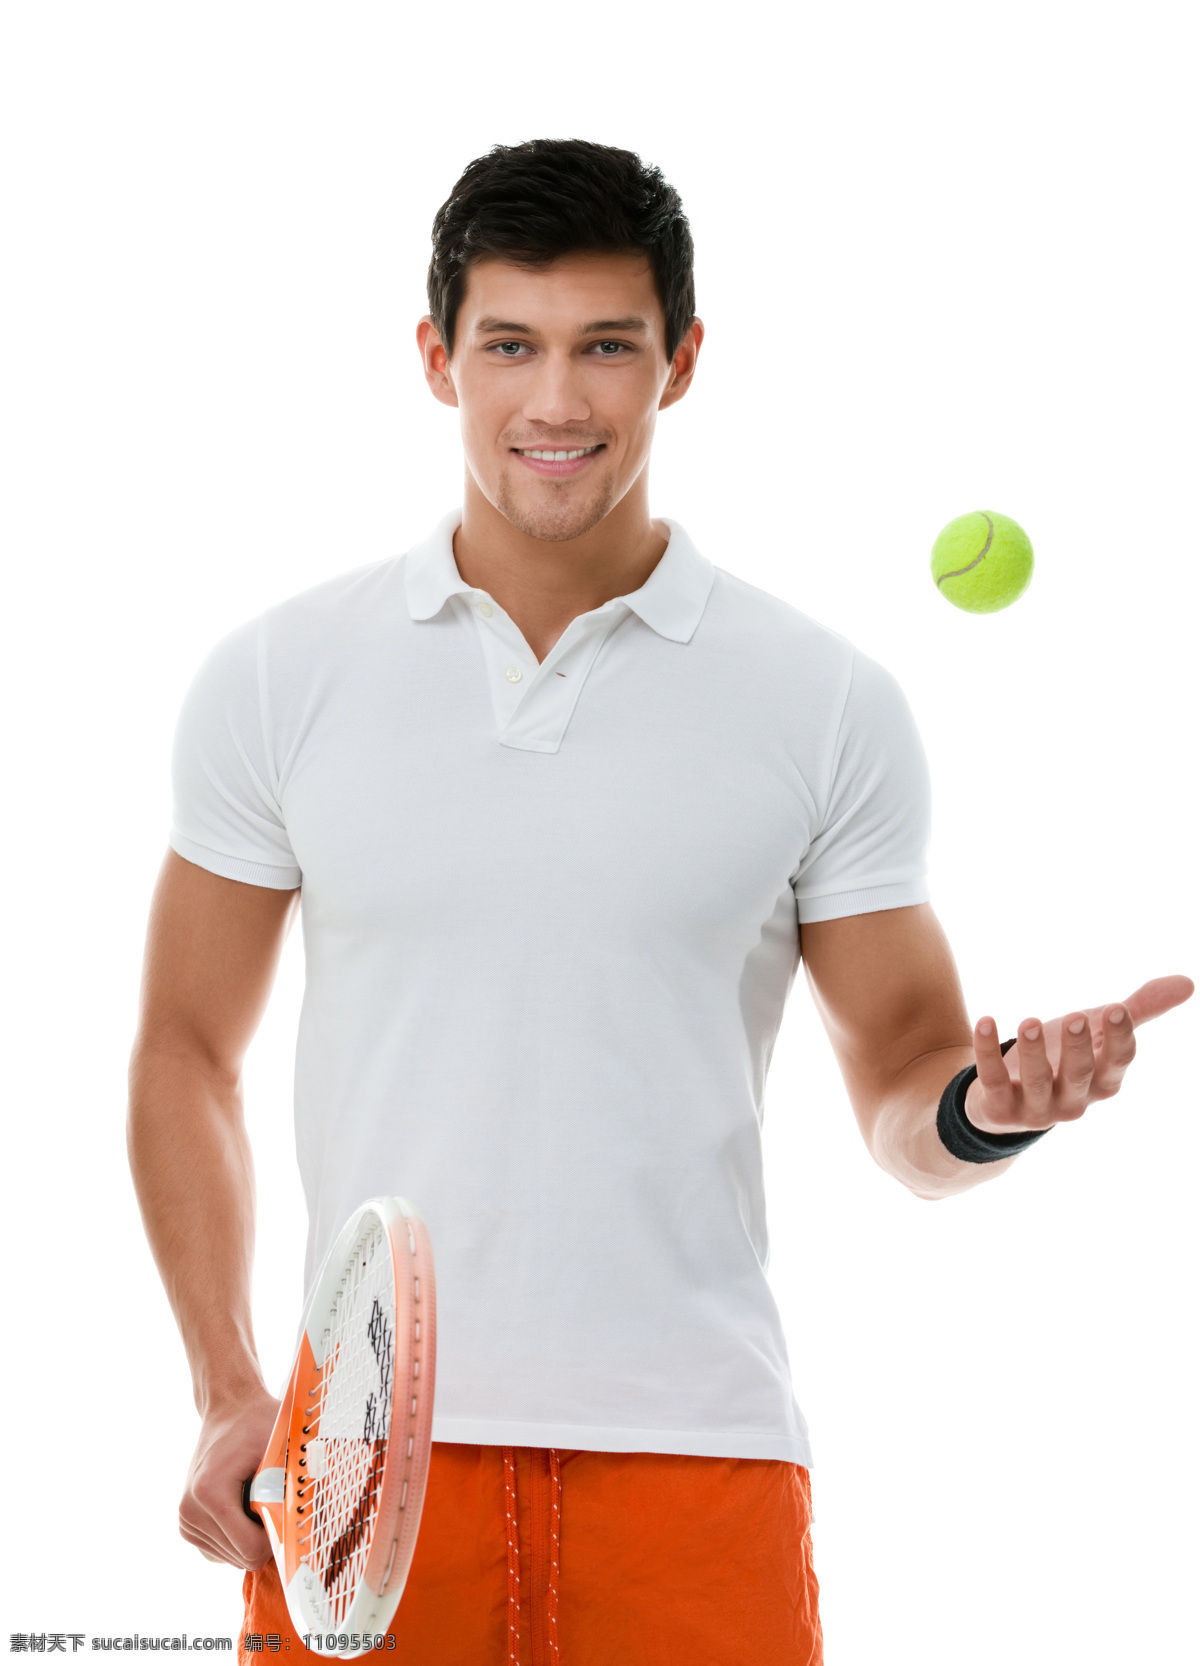 抛 网球 男人 体育运动 健身 体育锻炼 网球拍 外国男人 生活百科